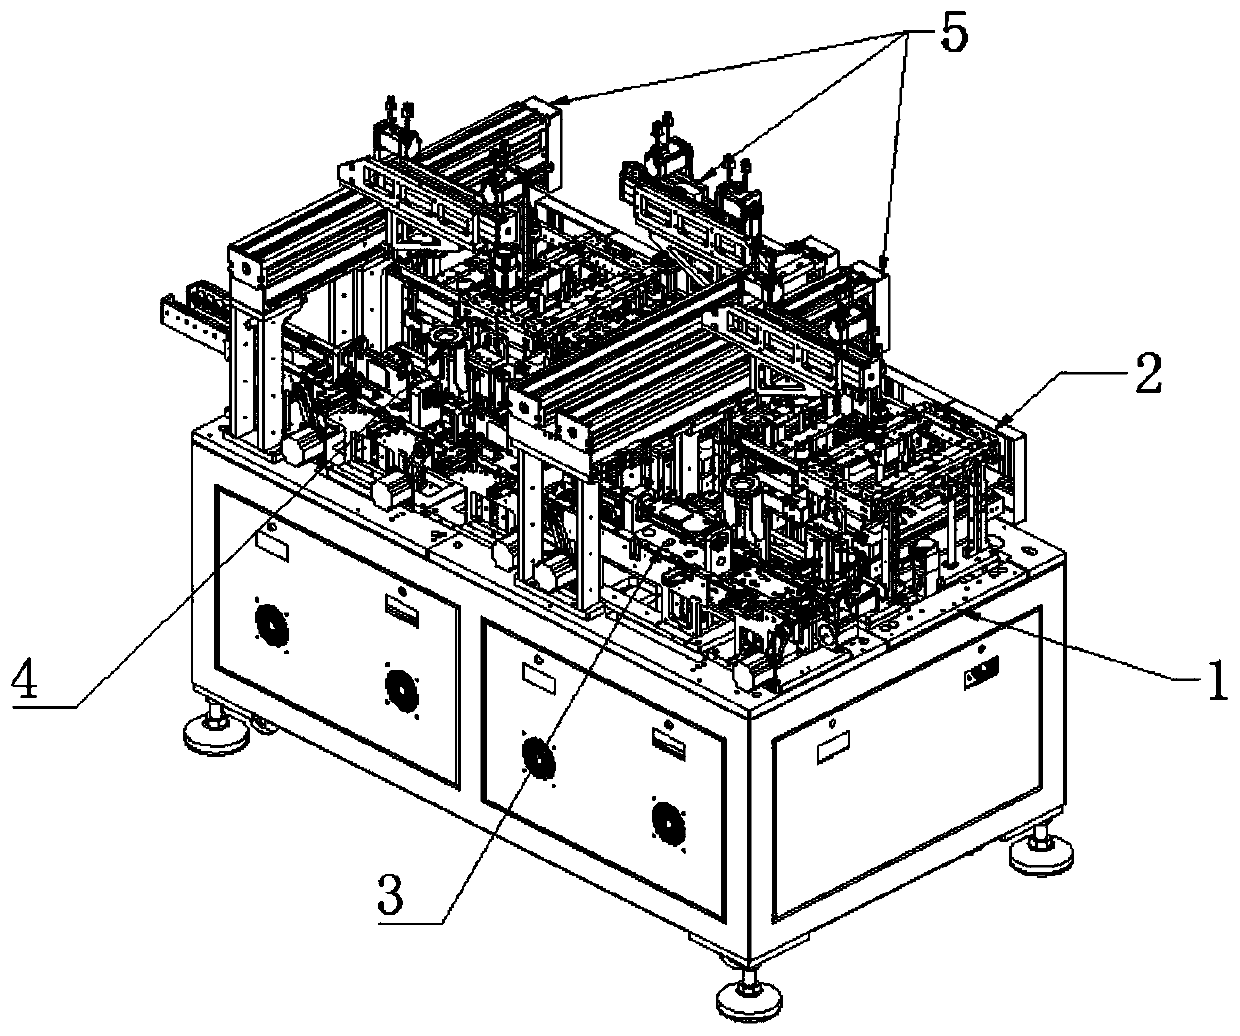 Full-automatic key assembly machine